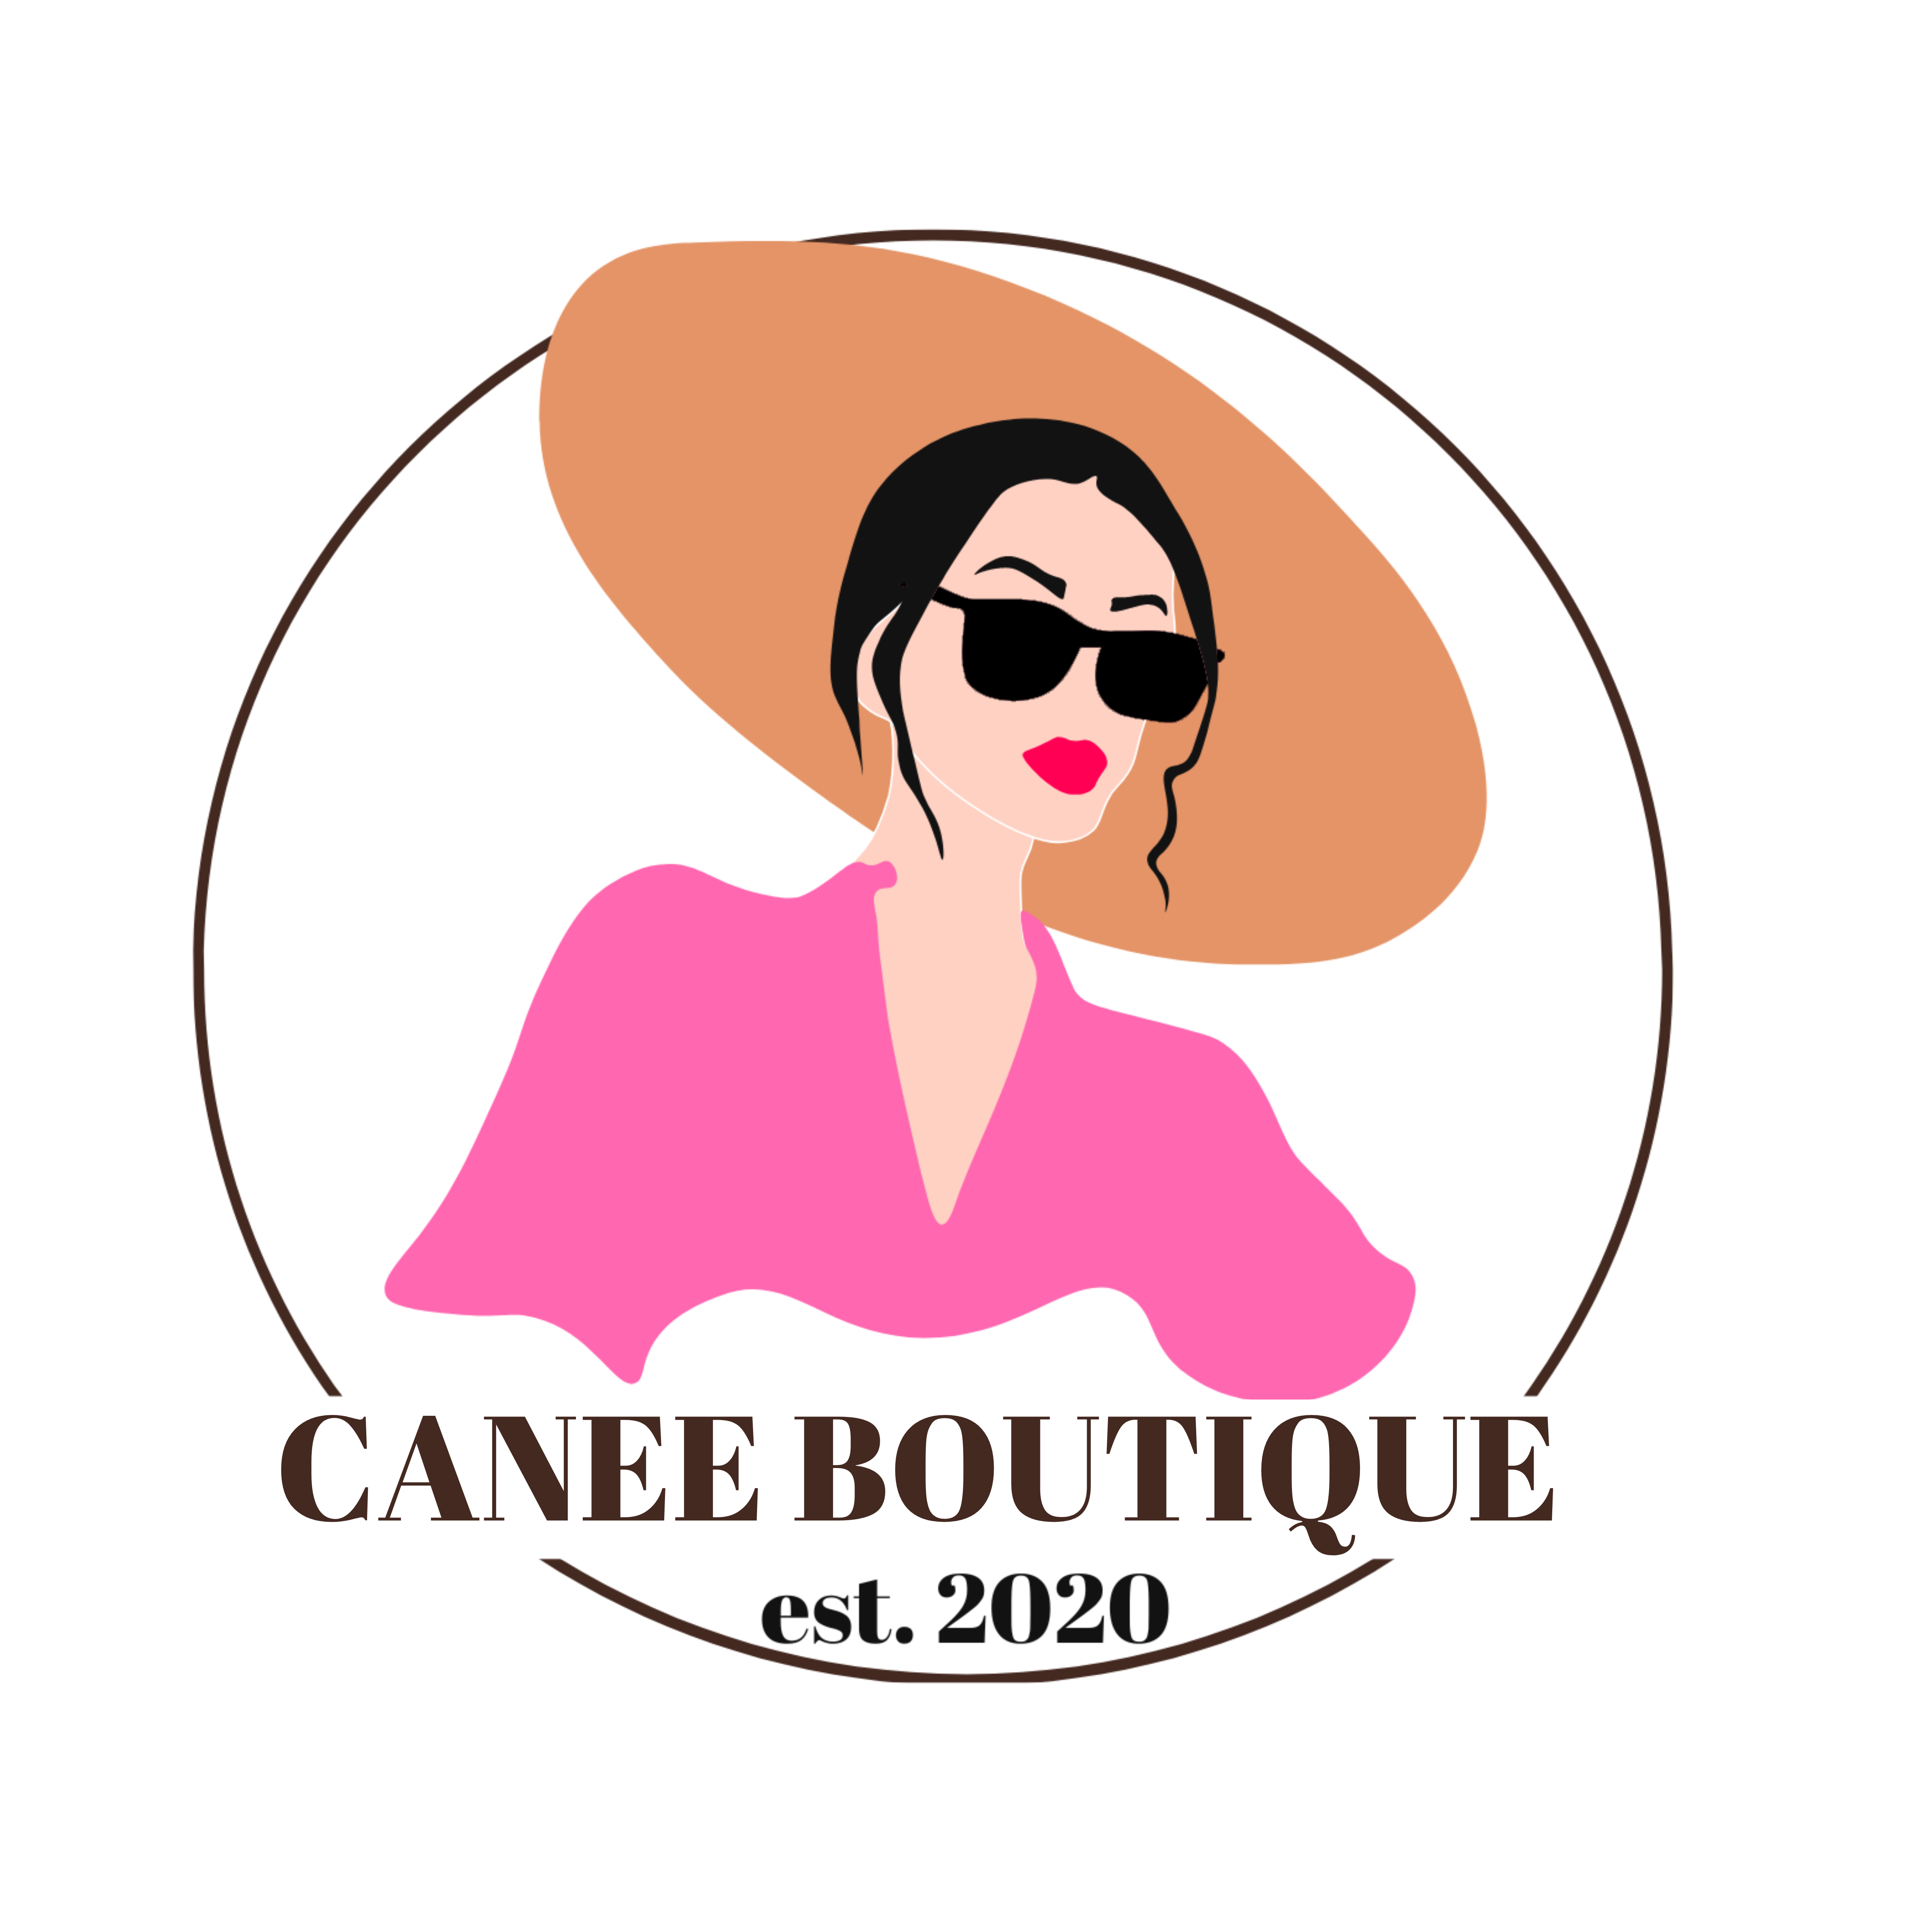 Canee boutique